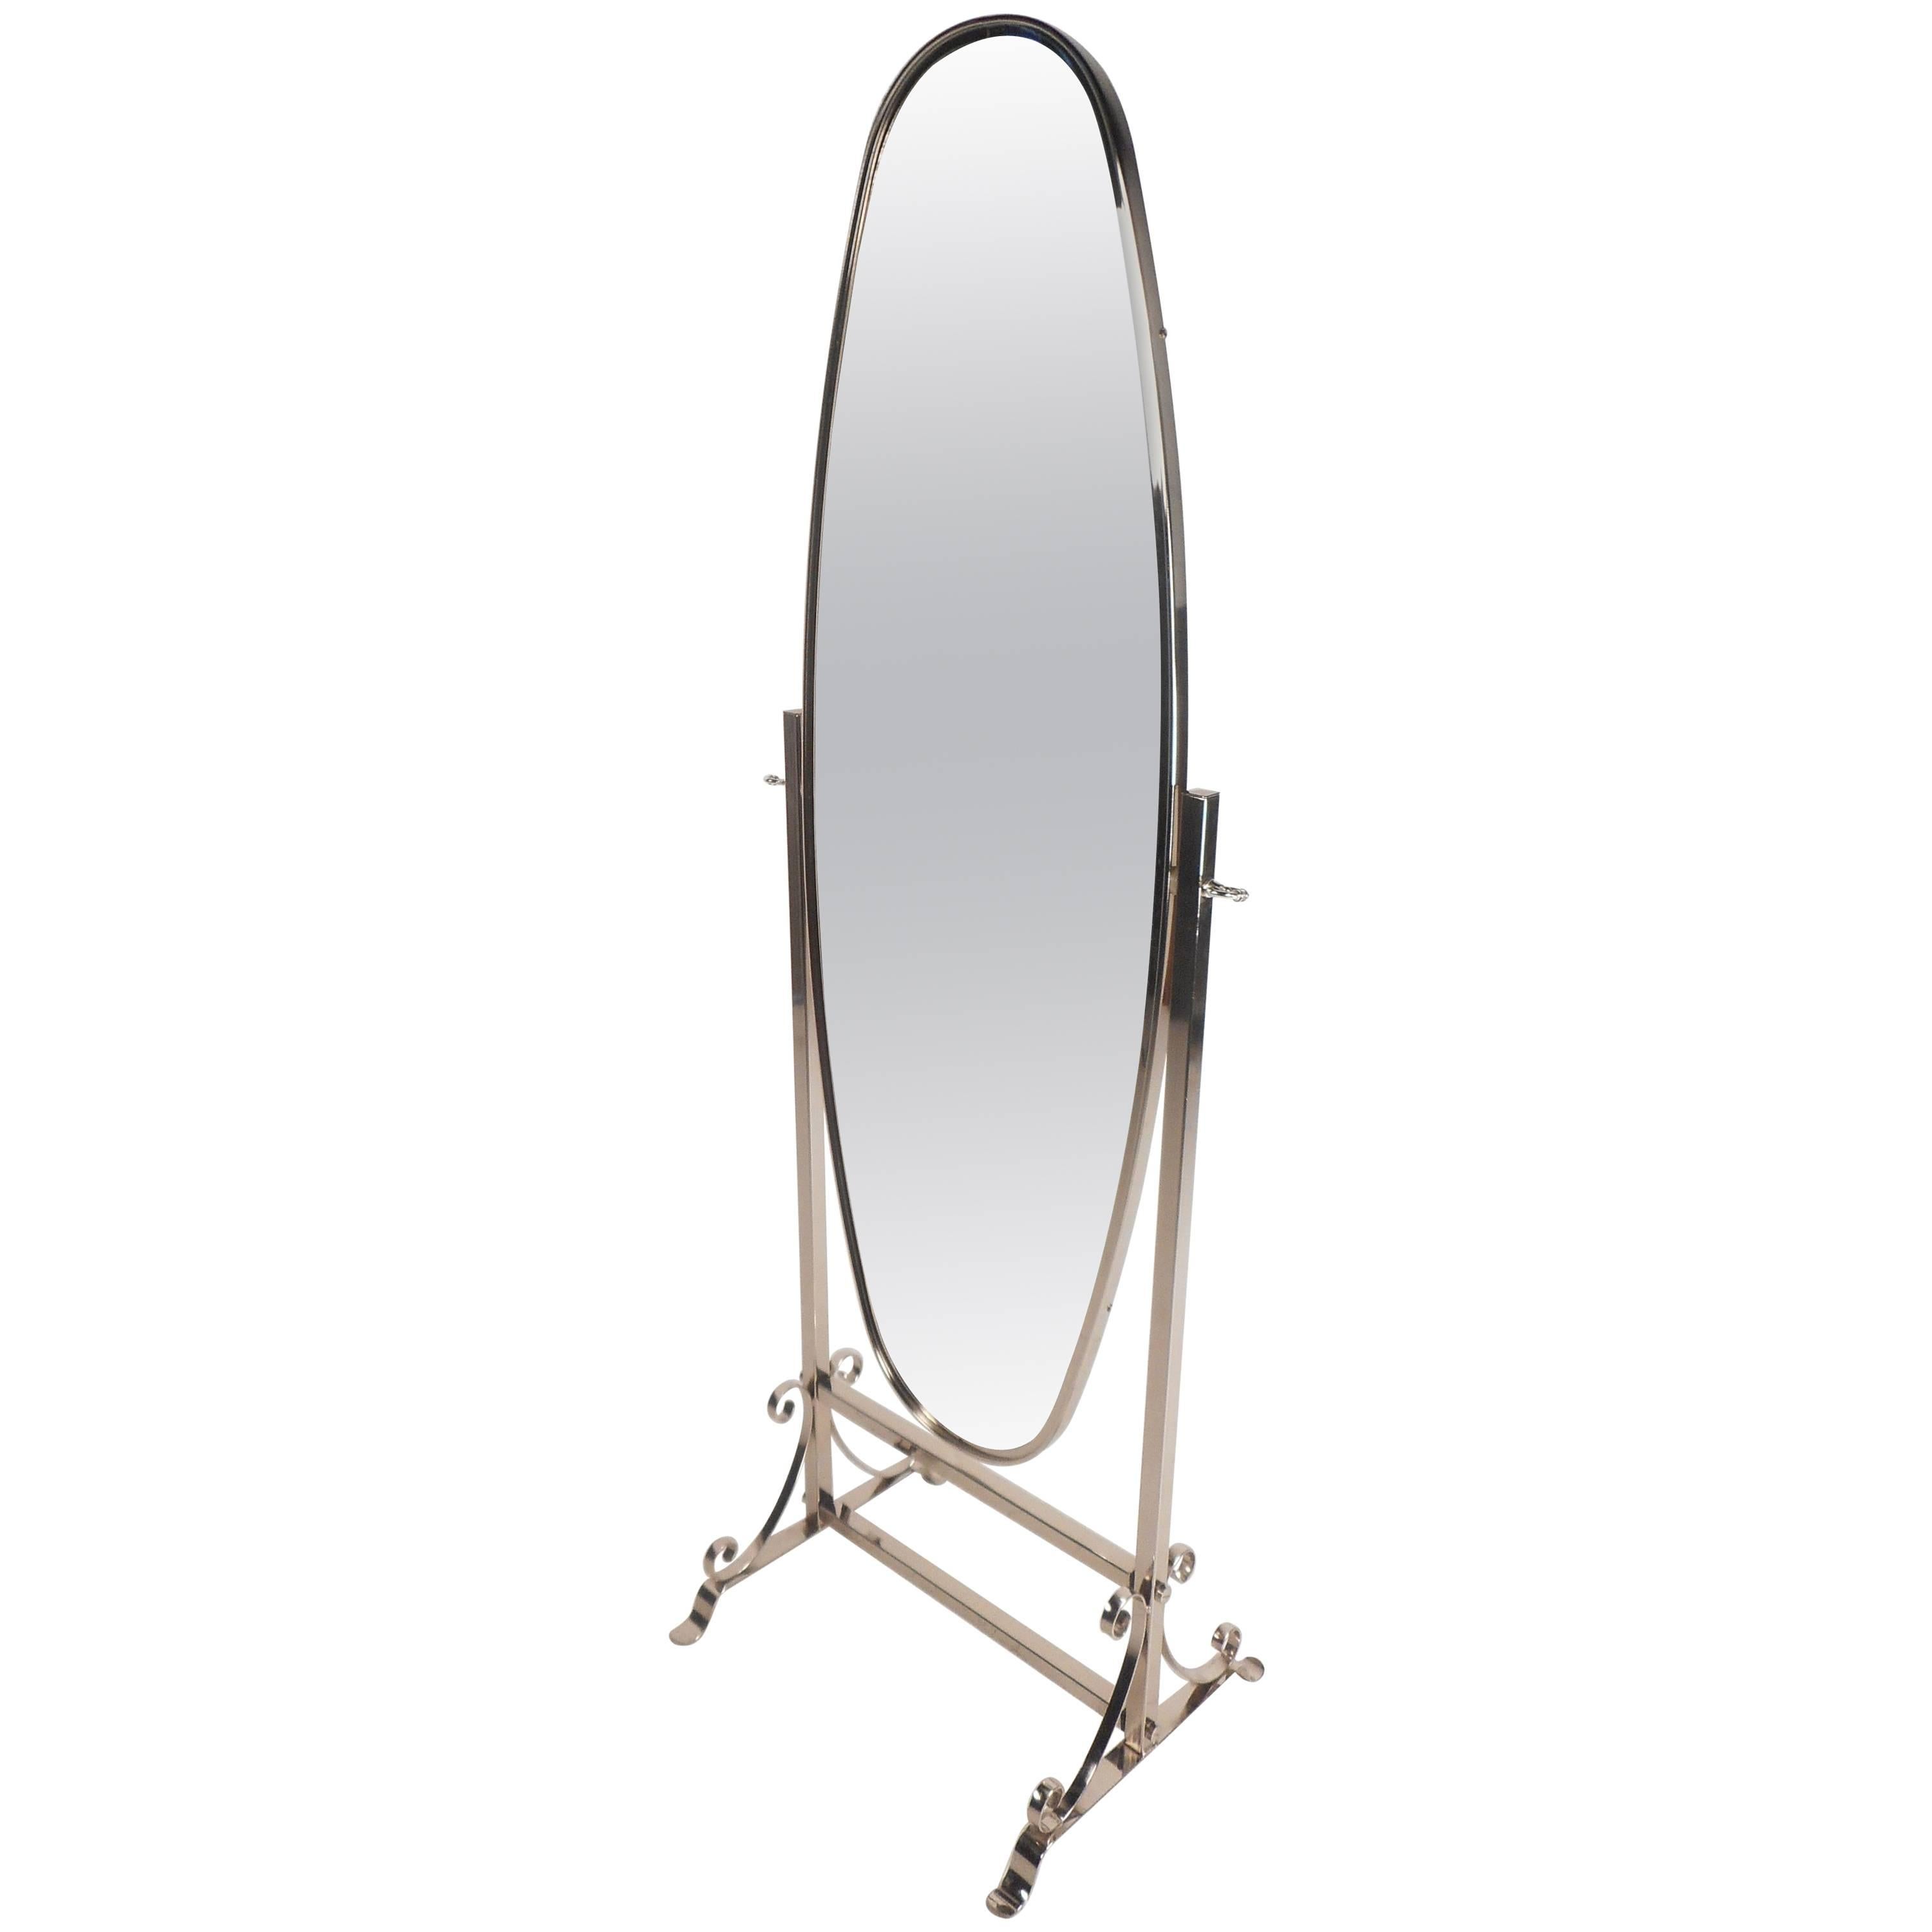 Unique Contemporary Modern Chrome Cheval Mirror